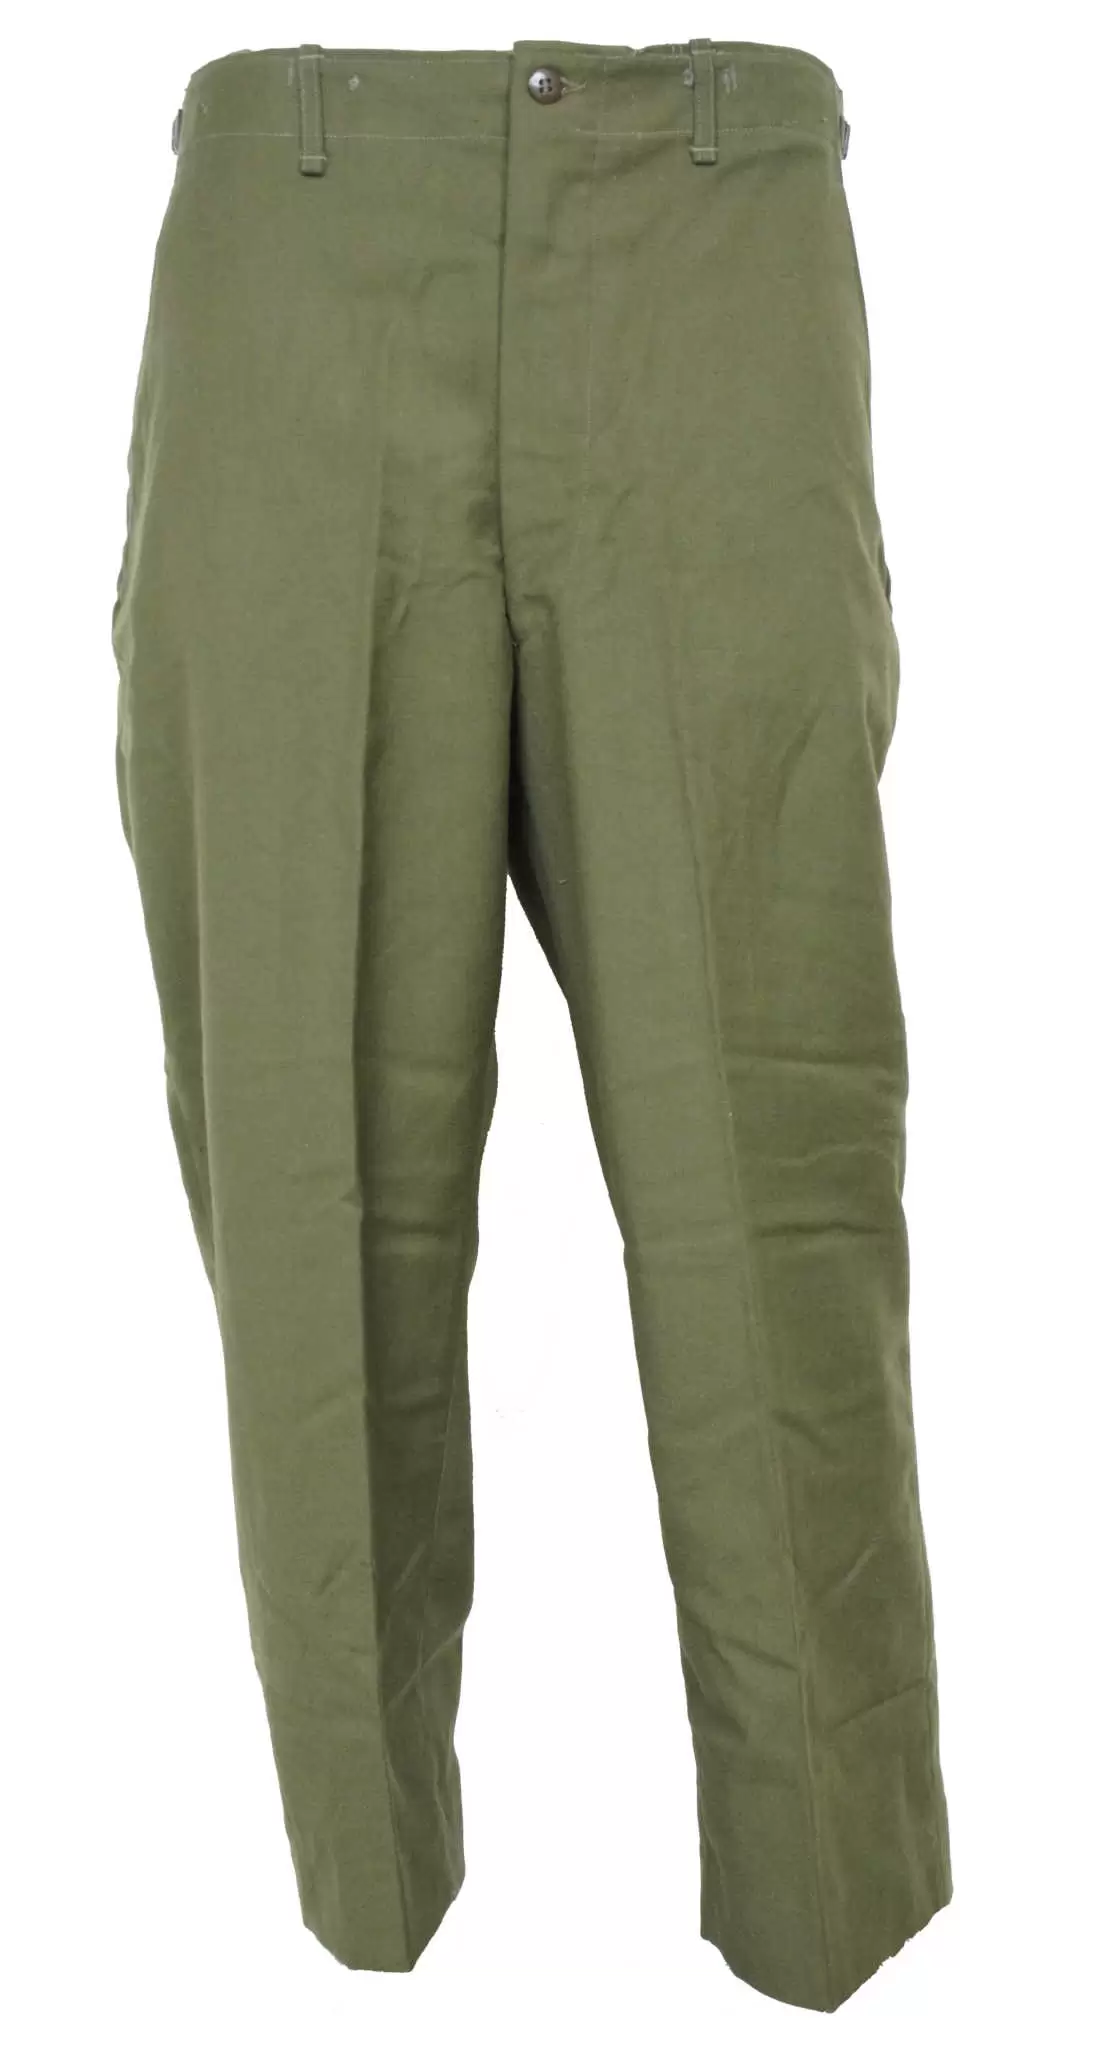 Vintage Olive Green Wool Military Surplus Pants STRIWA  Germany  eBay